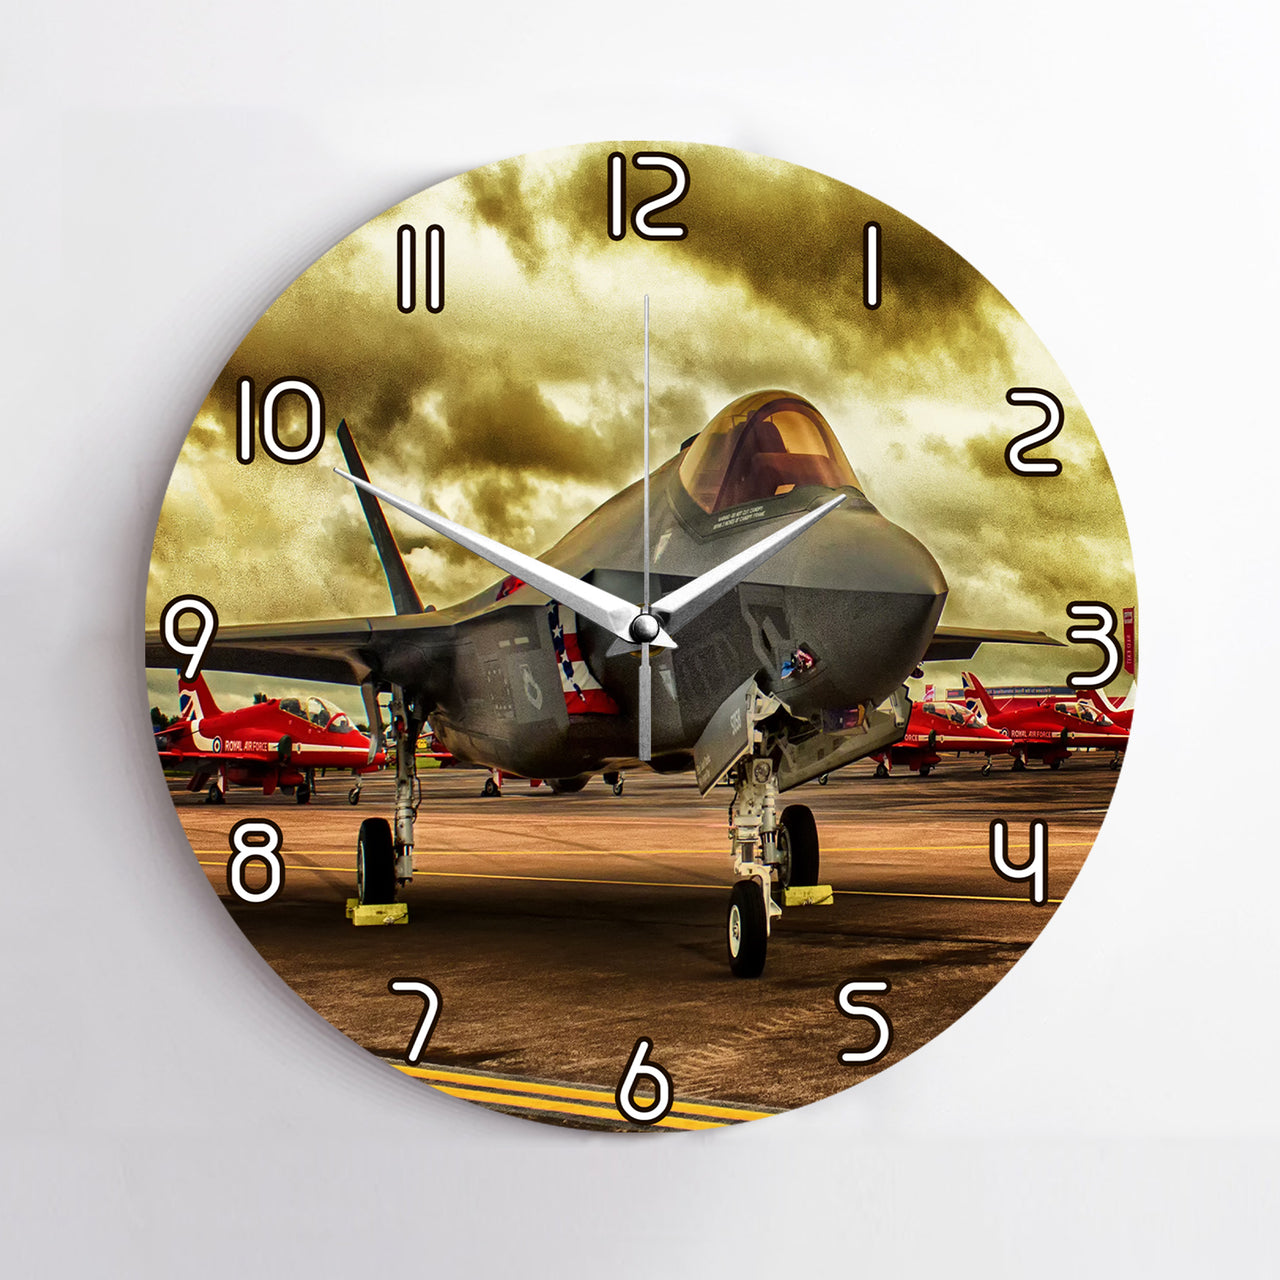 Fighting Falcon F35 at Airbase Printed Wall Clocks